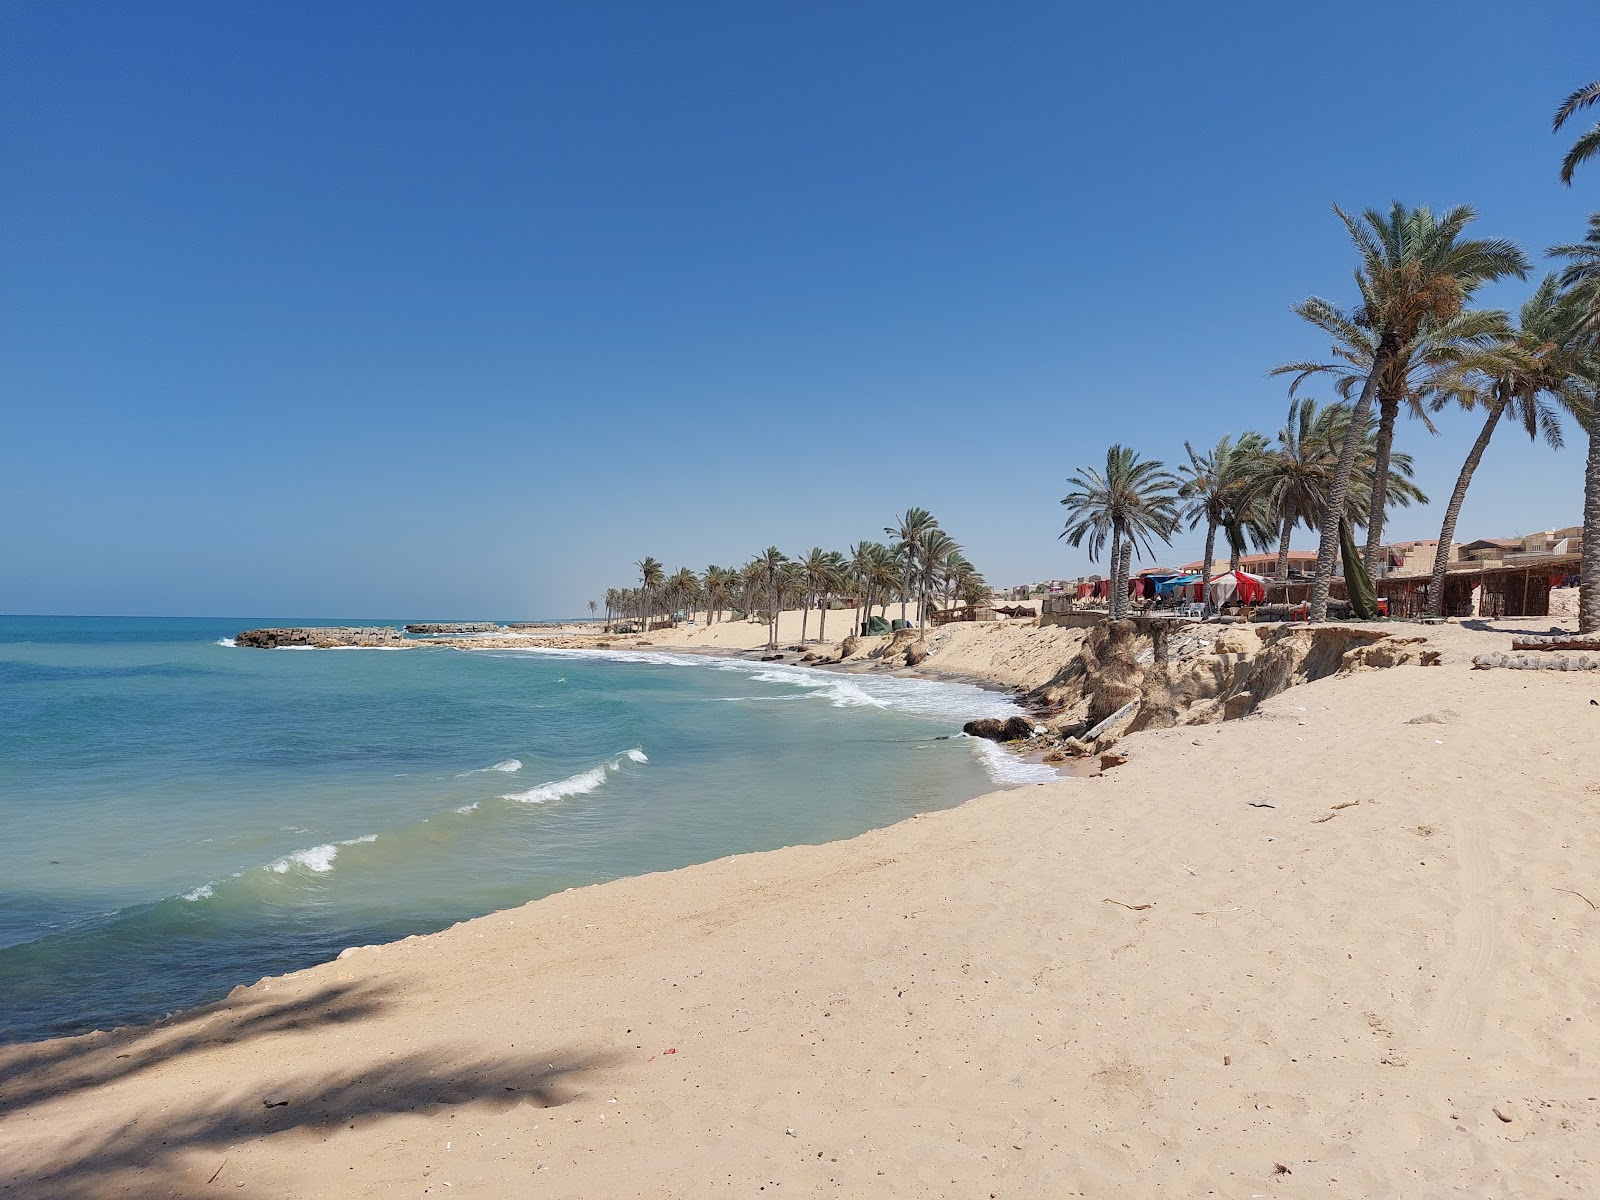 Foto af El Resa Beach - populært sted blandt afslapningskendere